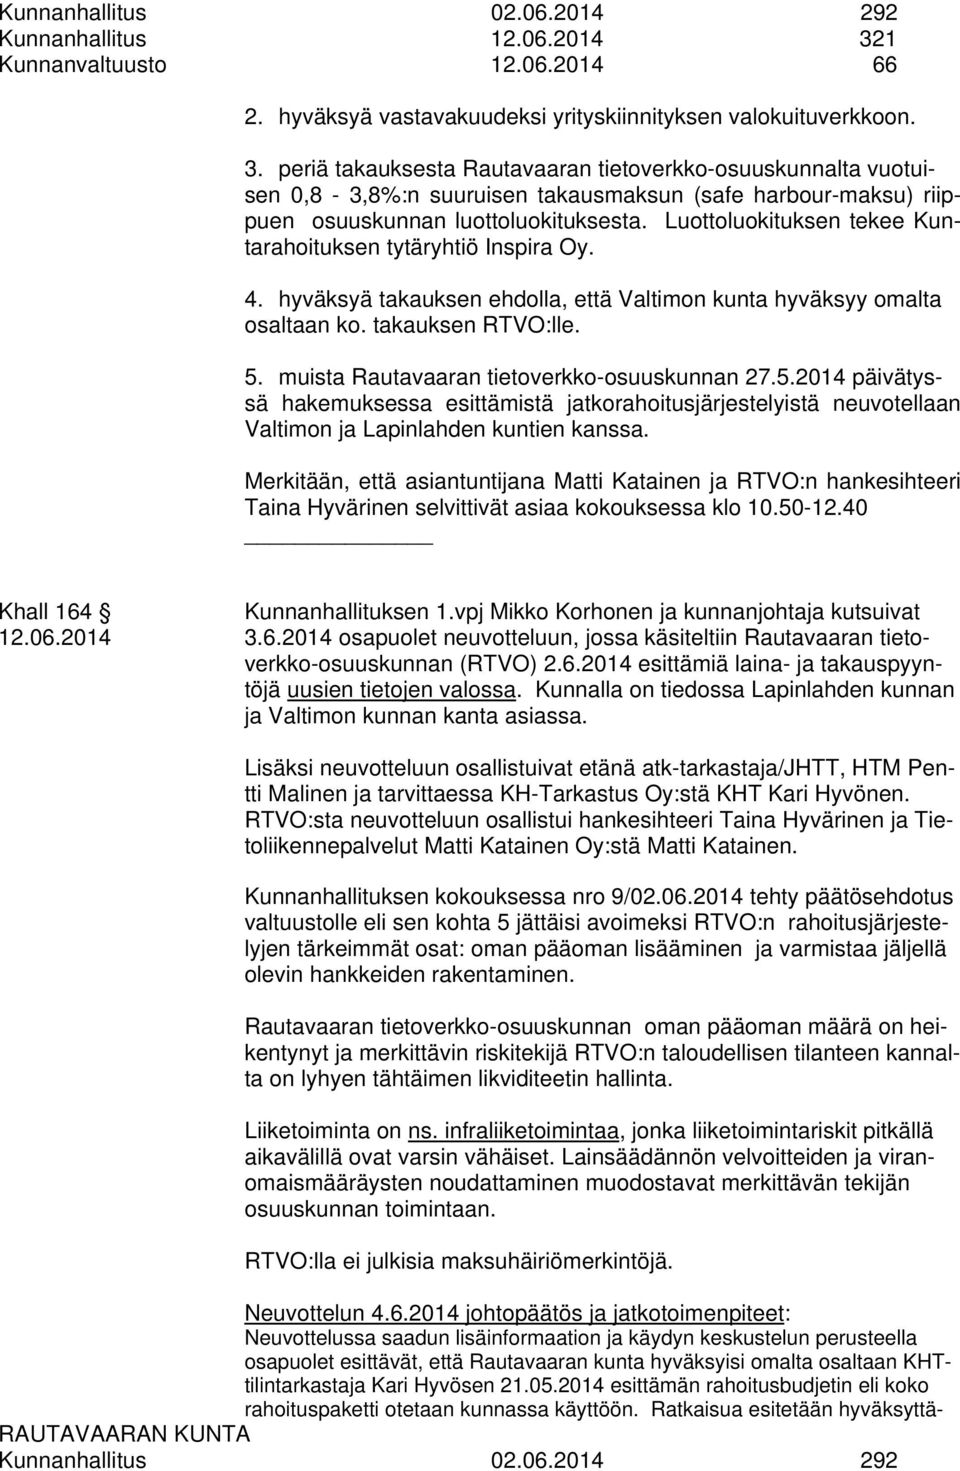 periä takauksesta Rautavaaran tietoverkko-osuuskunnalta vuotuisen 0,8-3,8%:n suuruisen takausmaksun (safe harbour-maksu) riippuen osuuskunnan luottoluokituksesta.